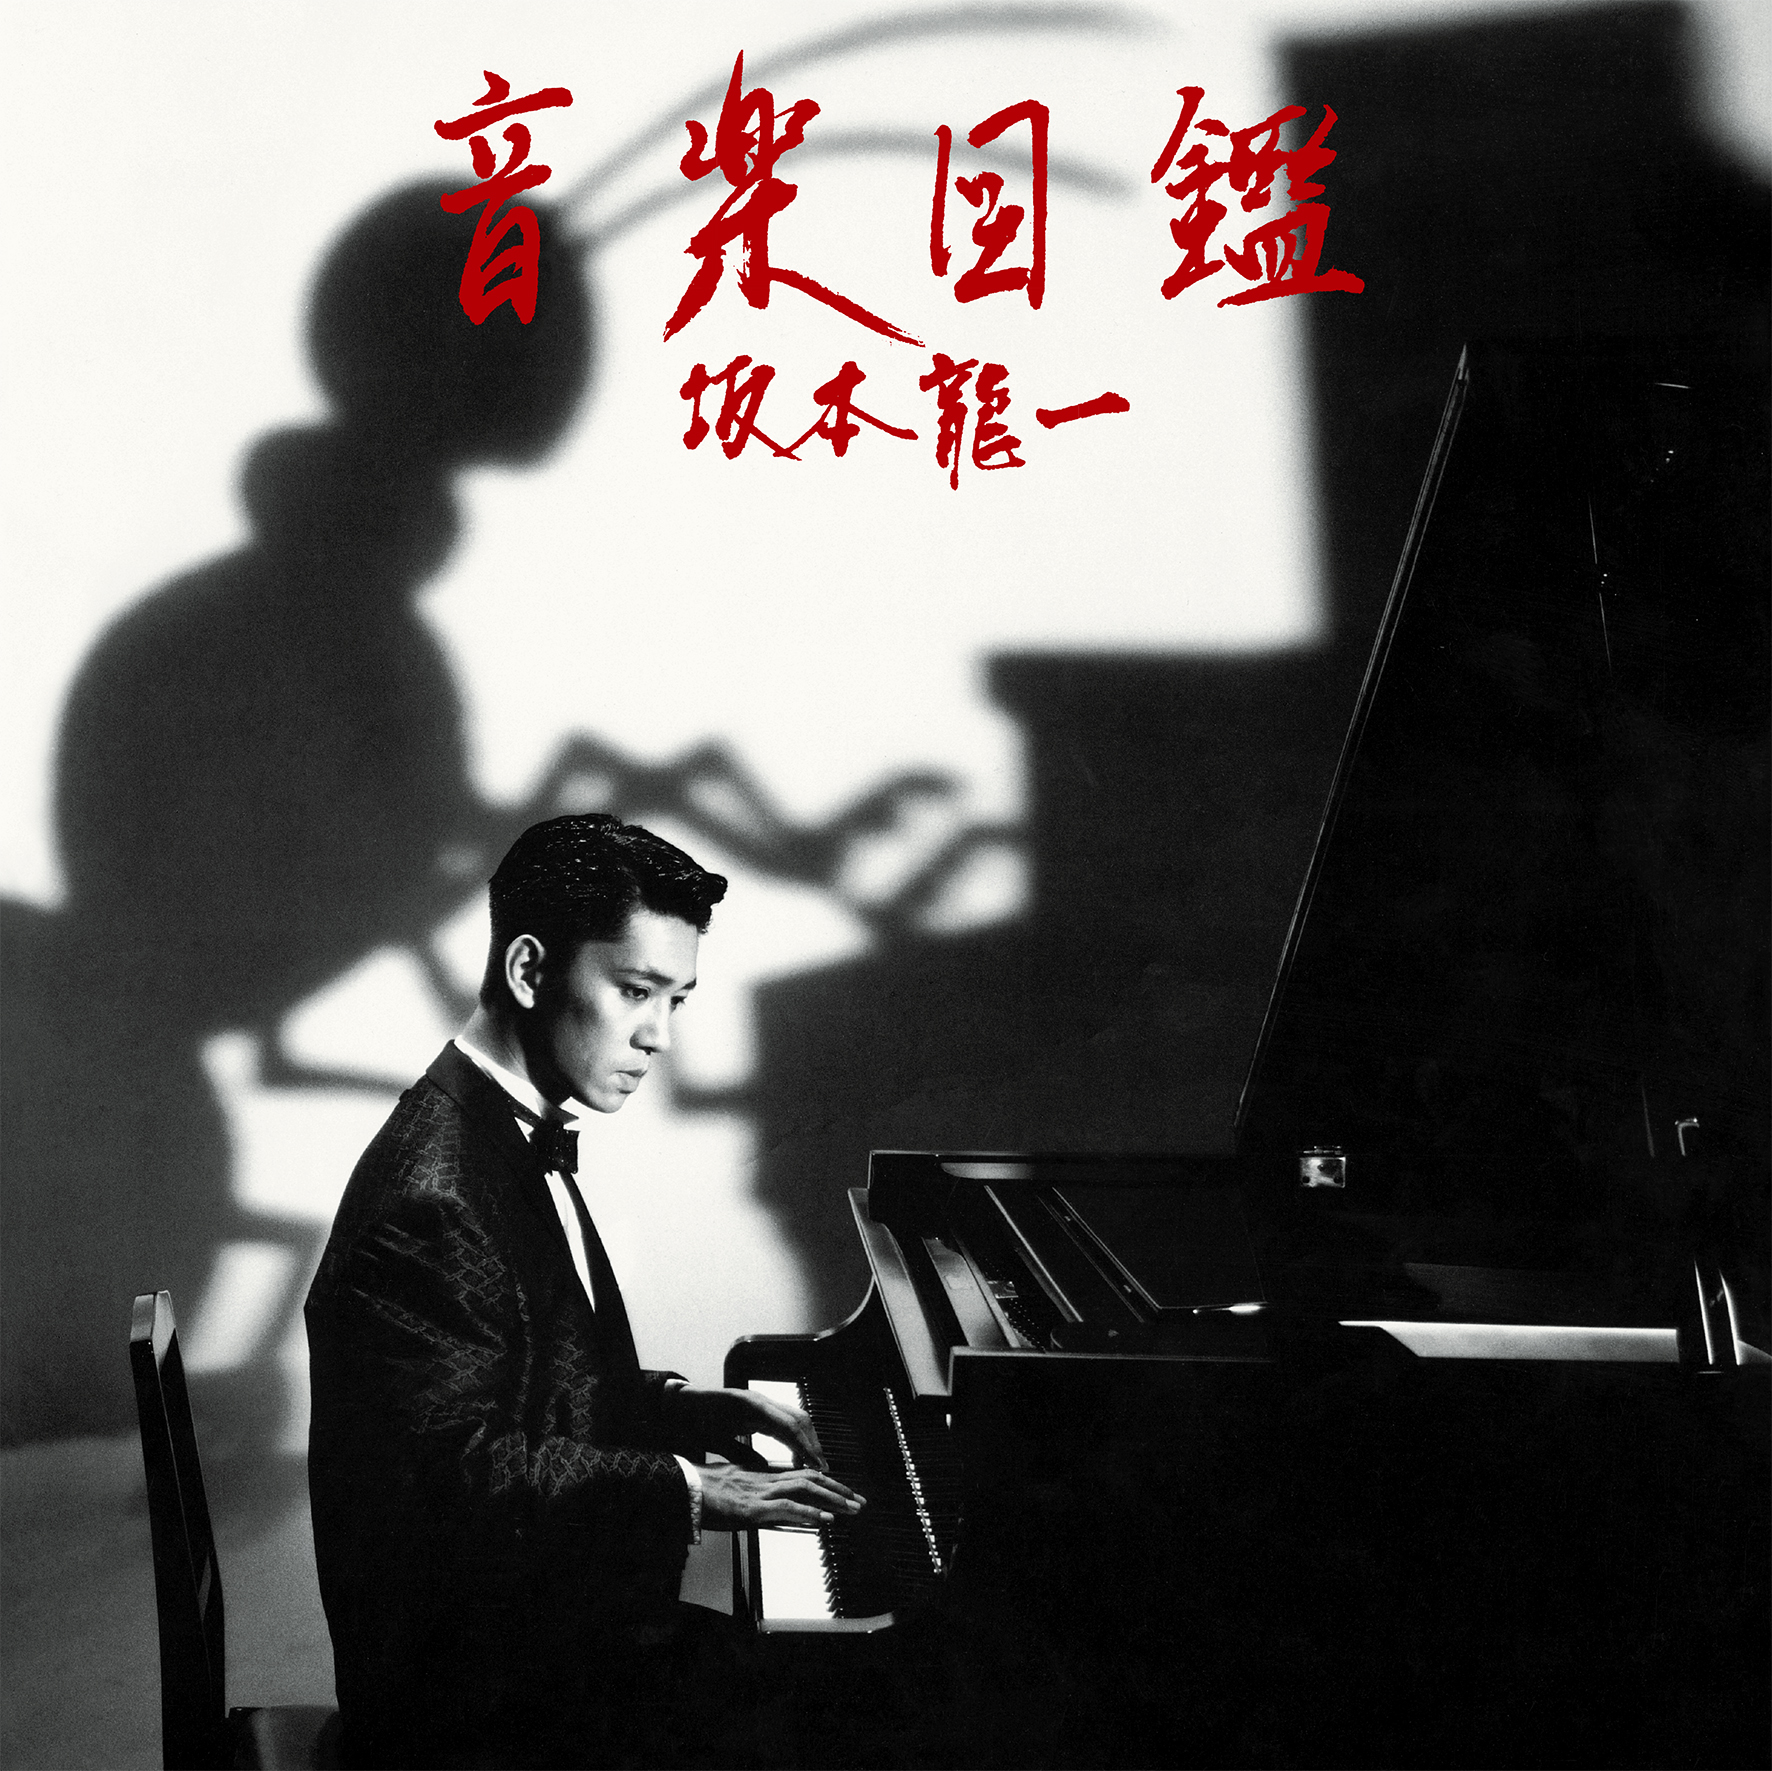 坂本龍一曰く〈特別なアルバム〉――84年作『音楽図鑑』に聴く、YMO散開 